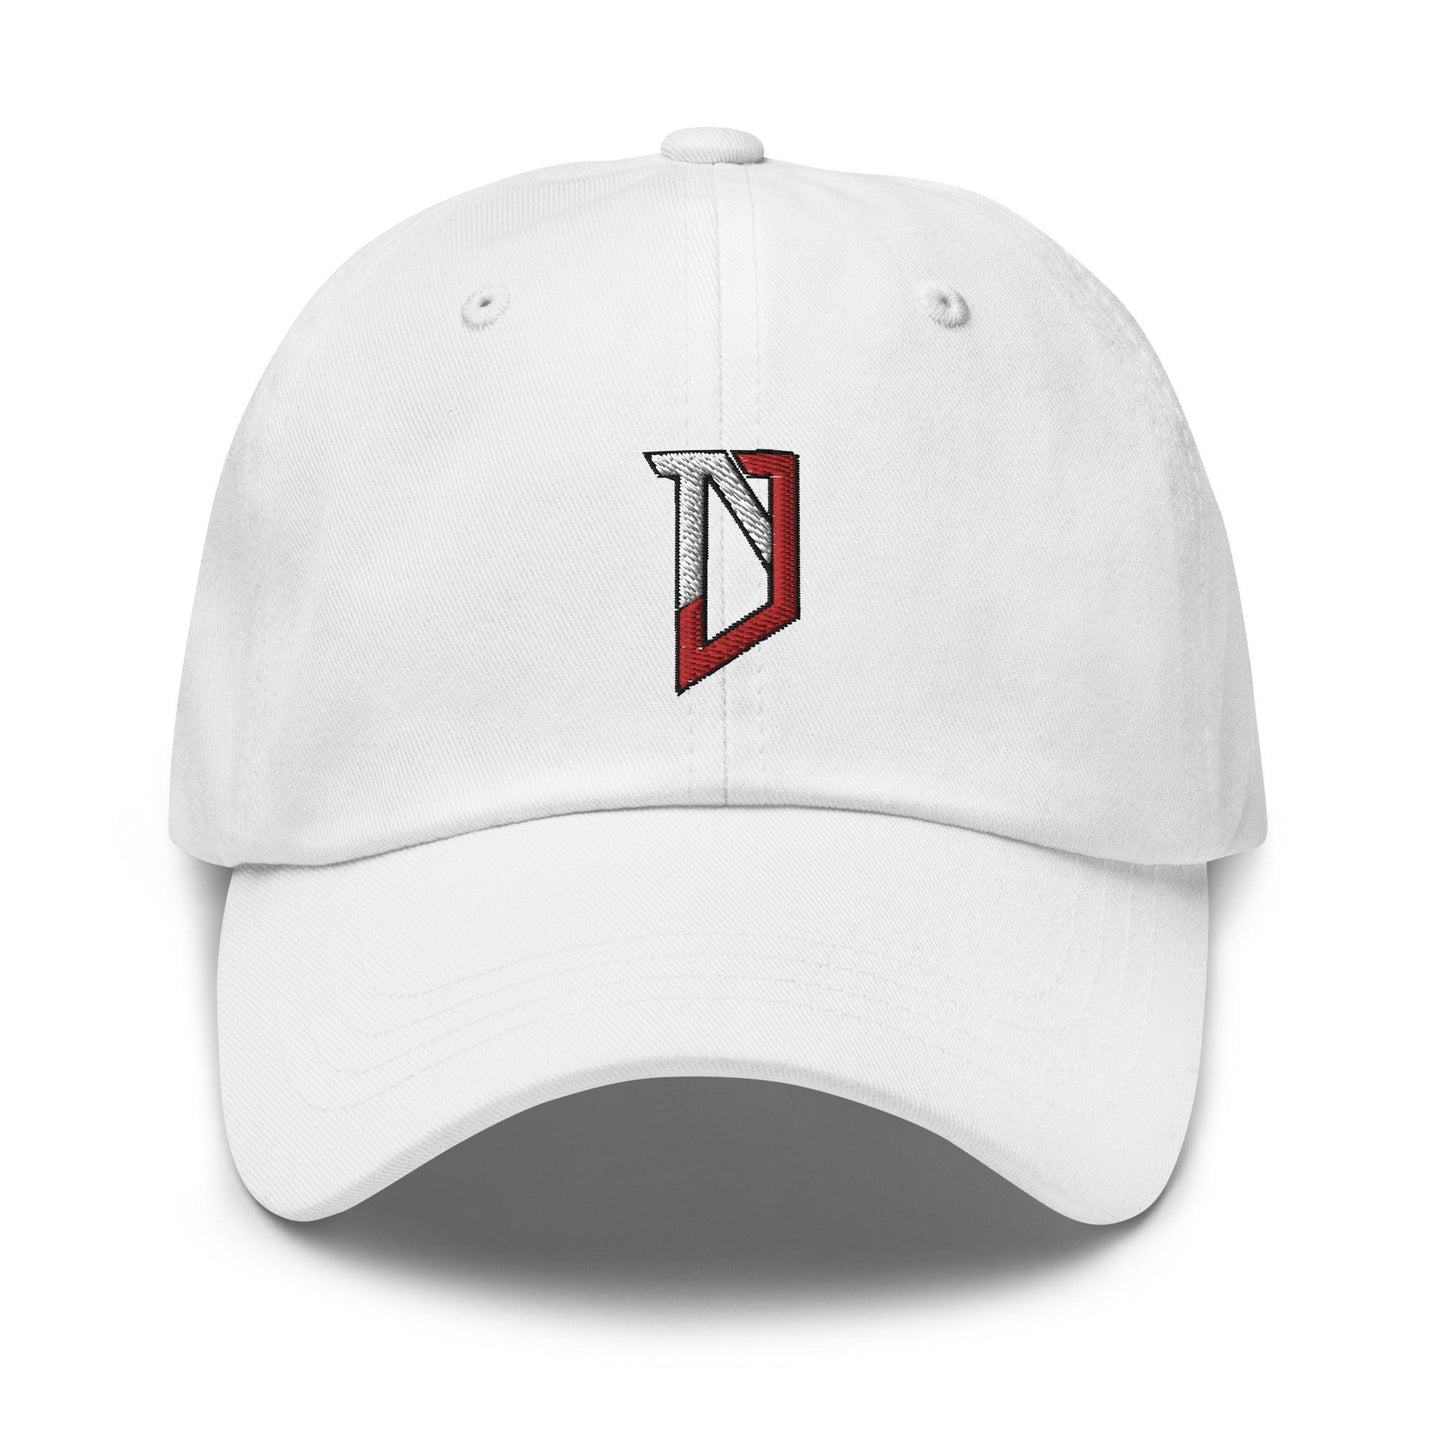 Nic Jones "NJ" hat - Fan Arch